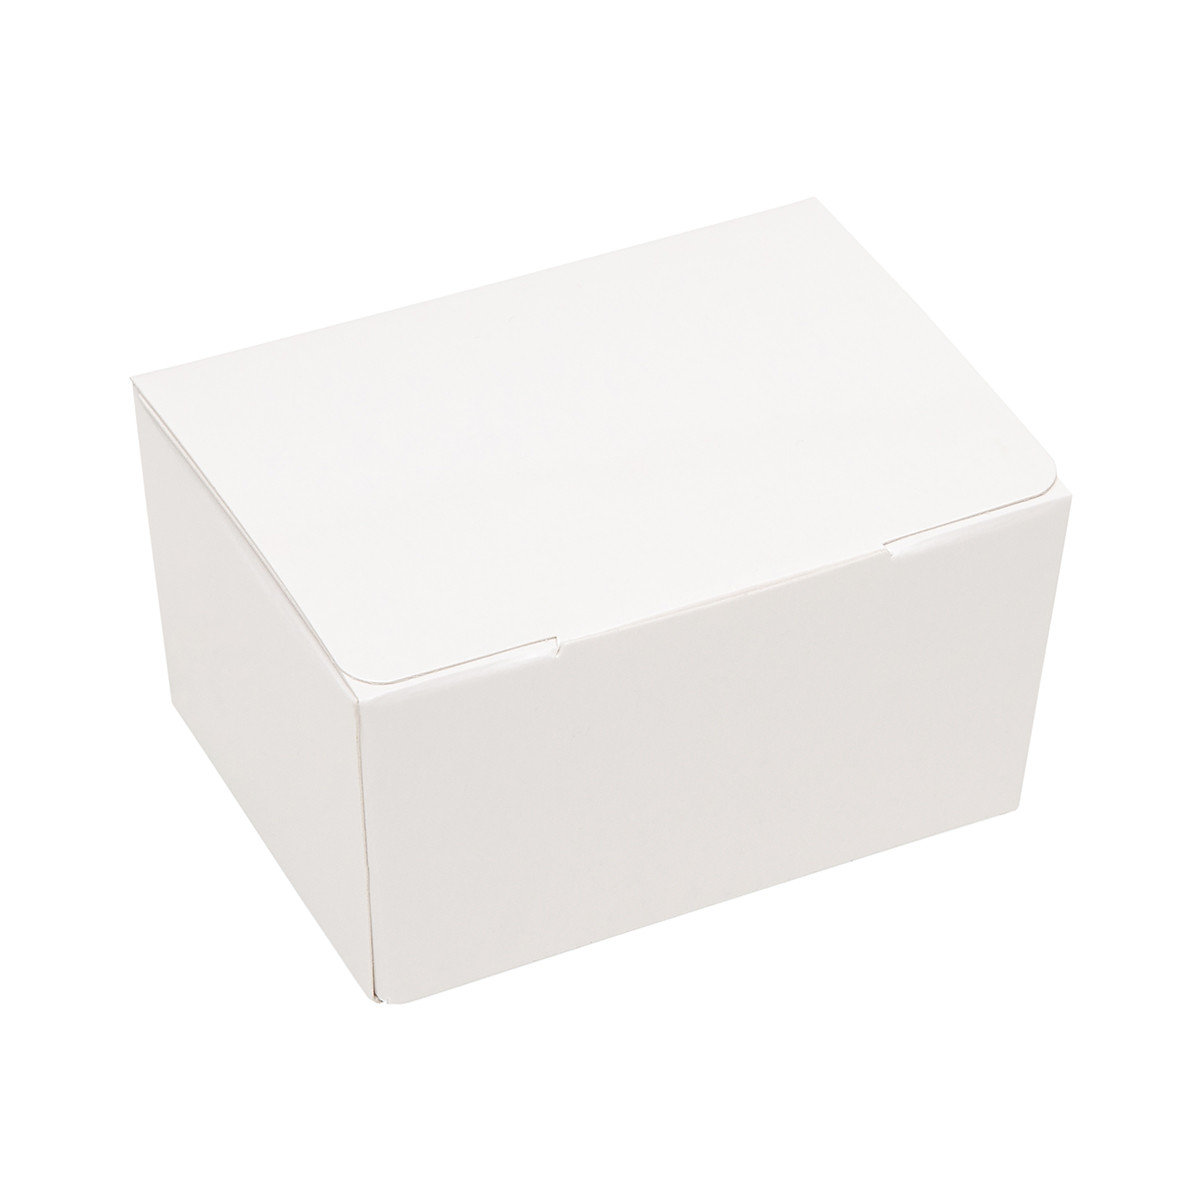 Bonbon box White Glossy -125 grams- 25 pieces